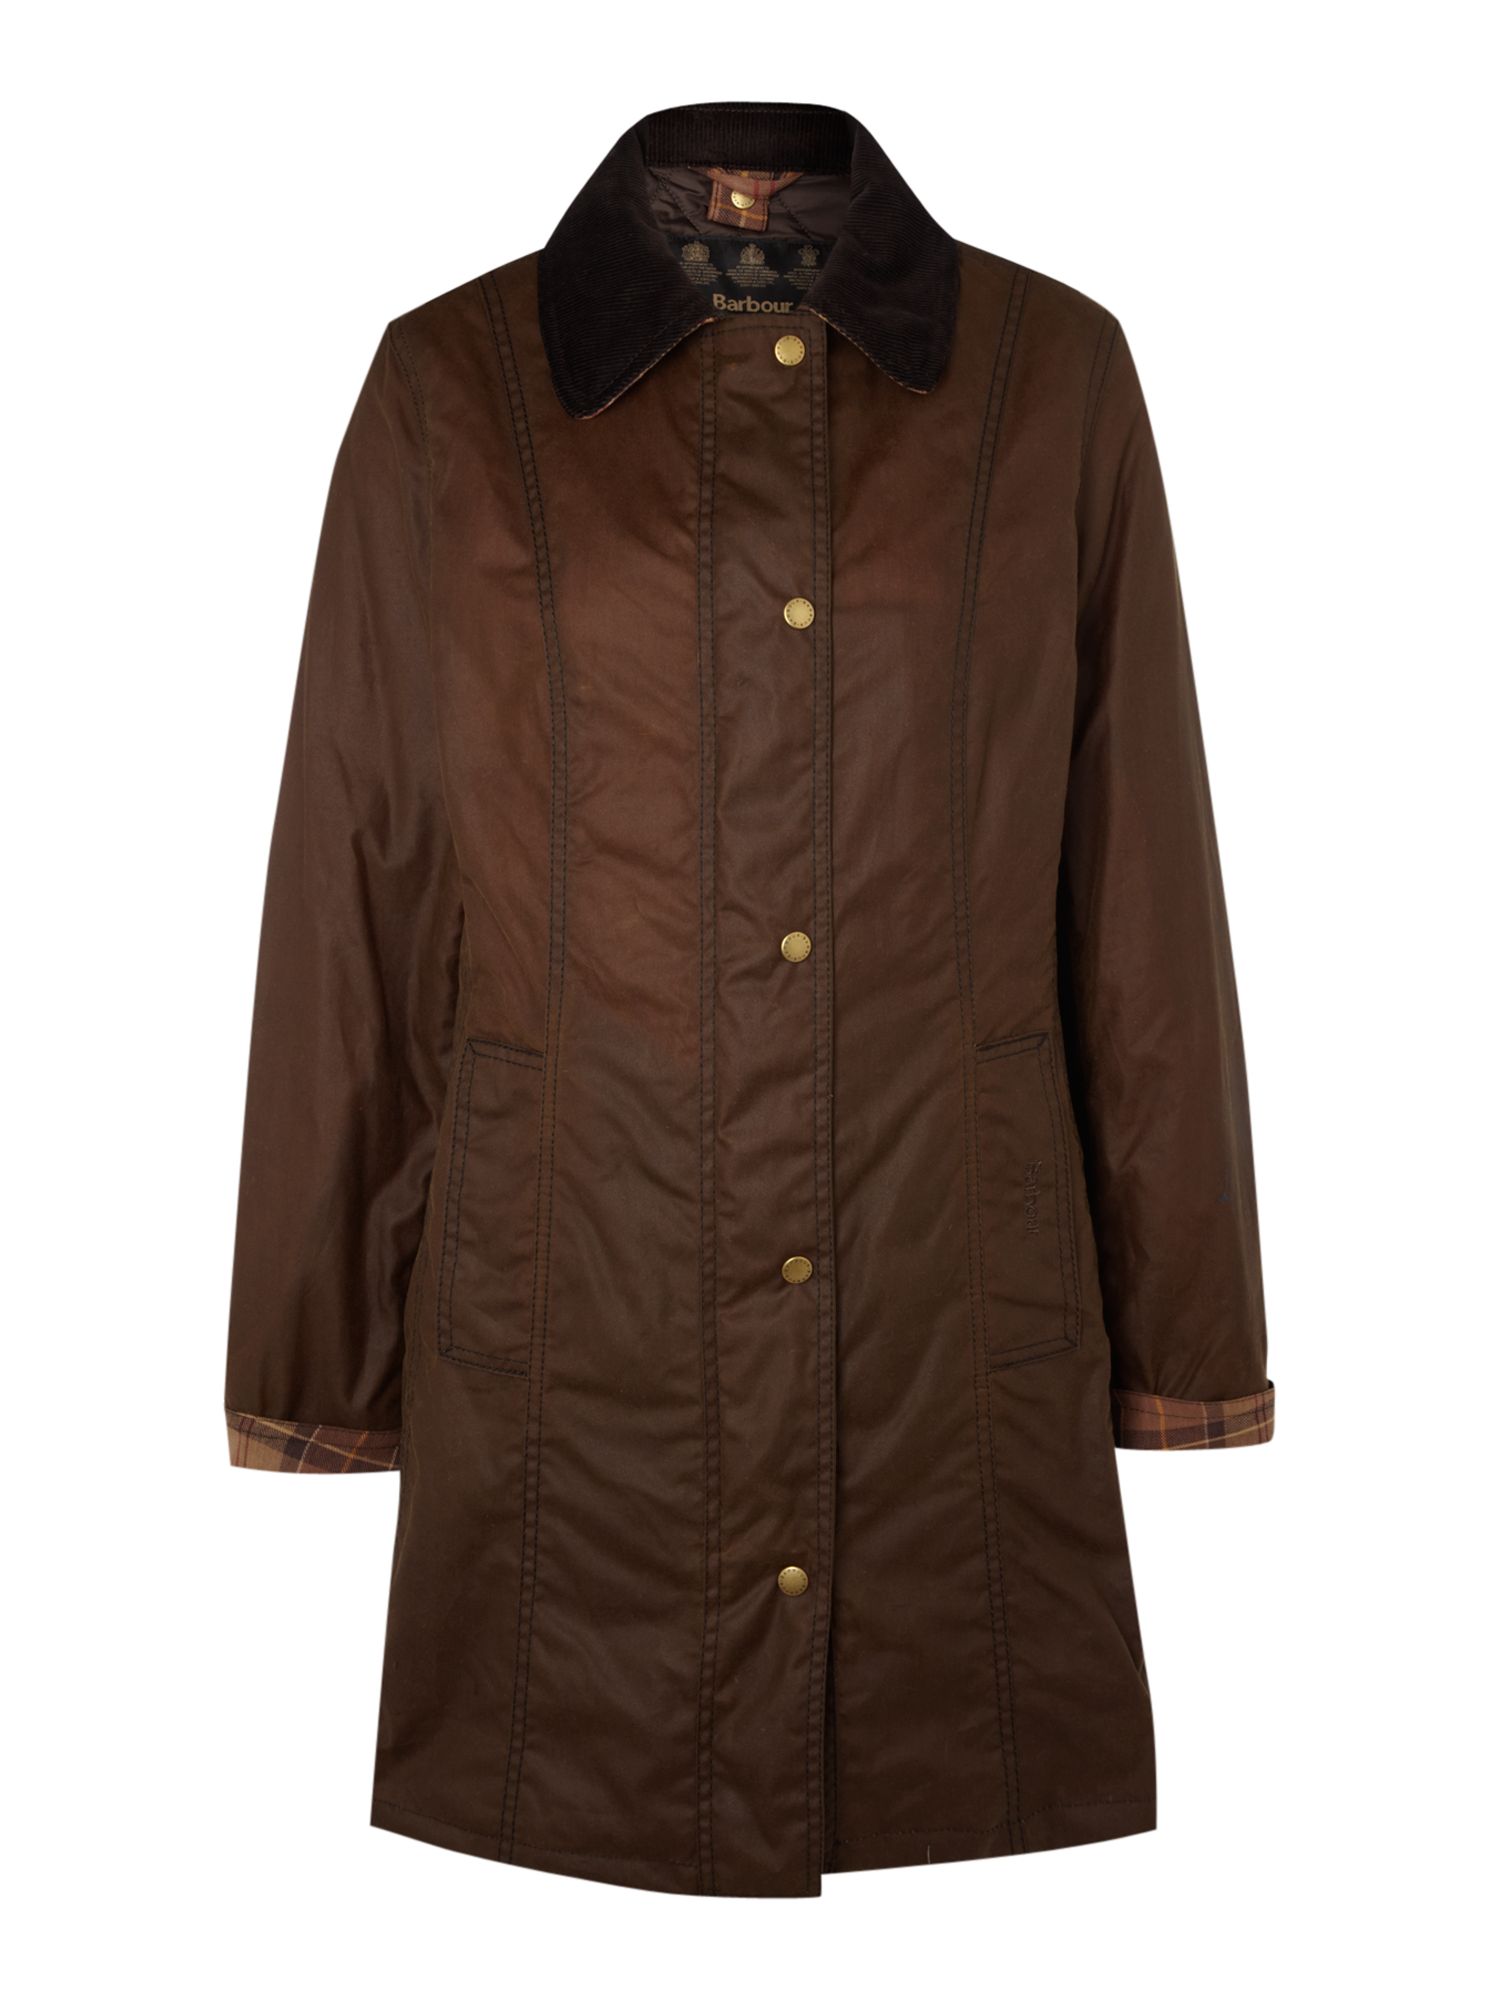 Barbour Belsay Jacket in (Brown) | Lyst